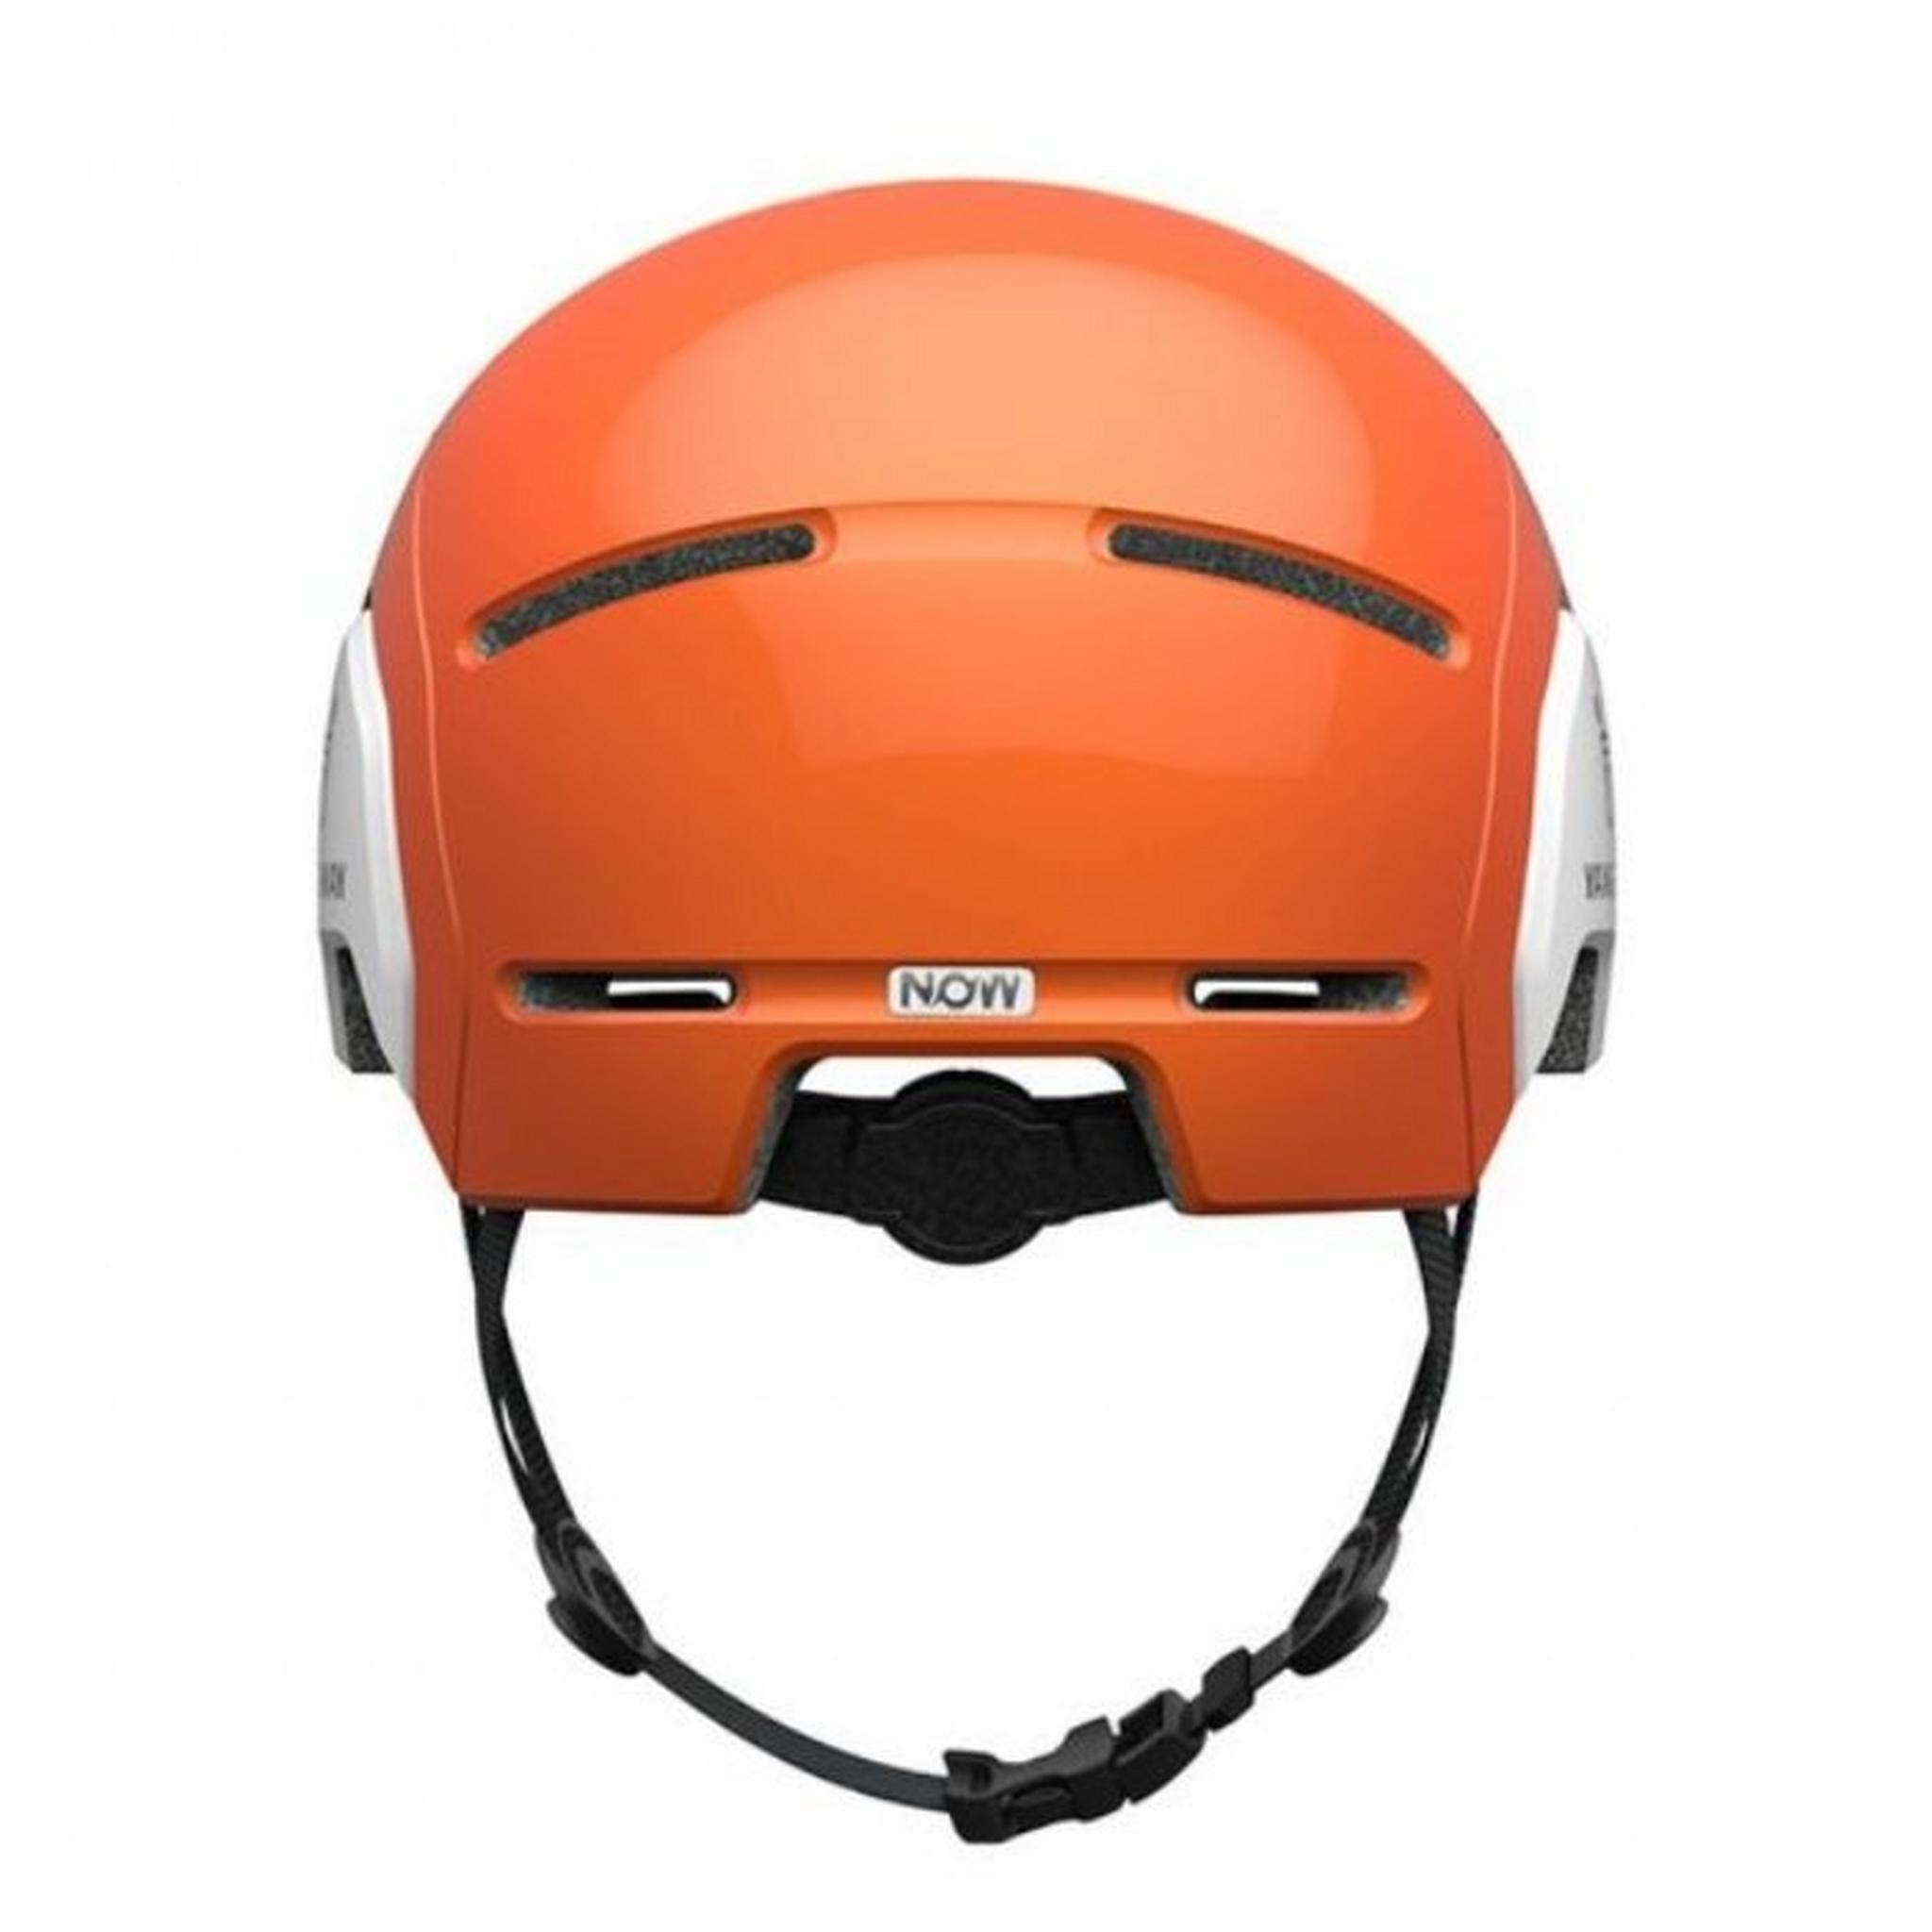 Segway Kickscooter Kids Commuter Helmet - Orange